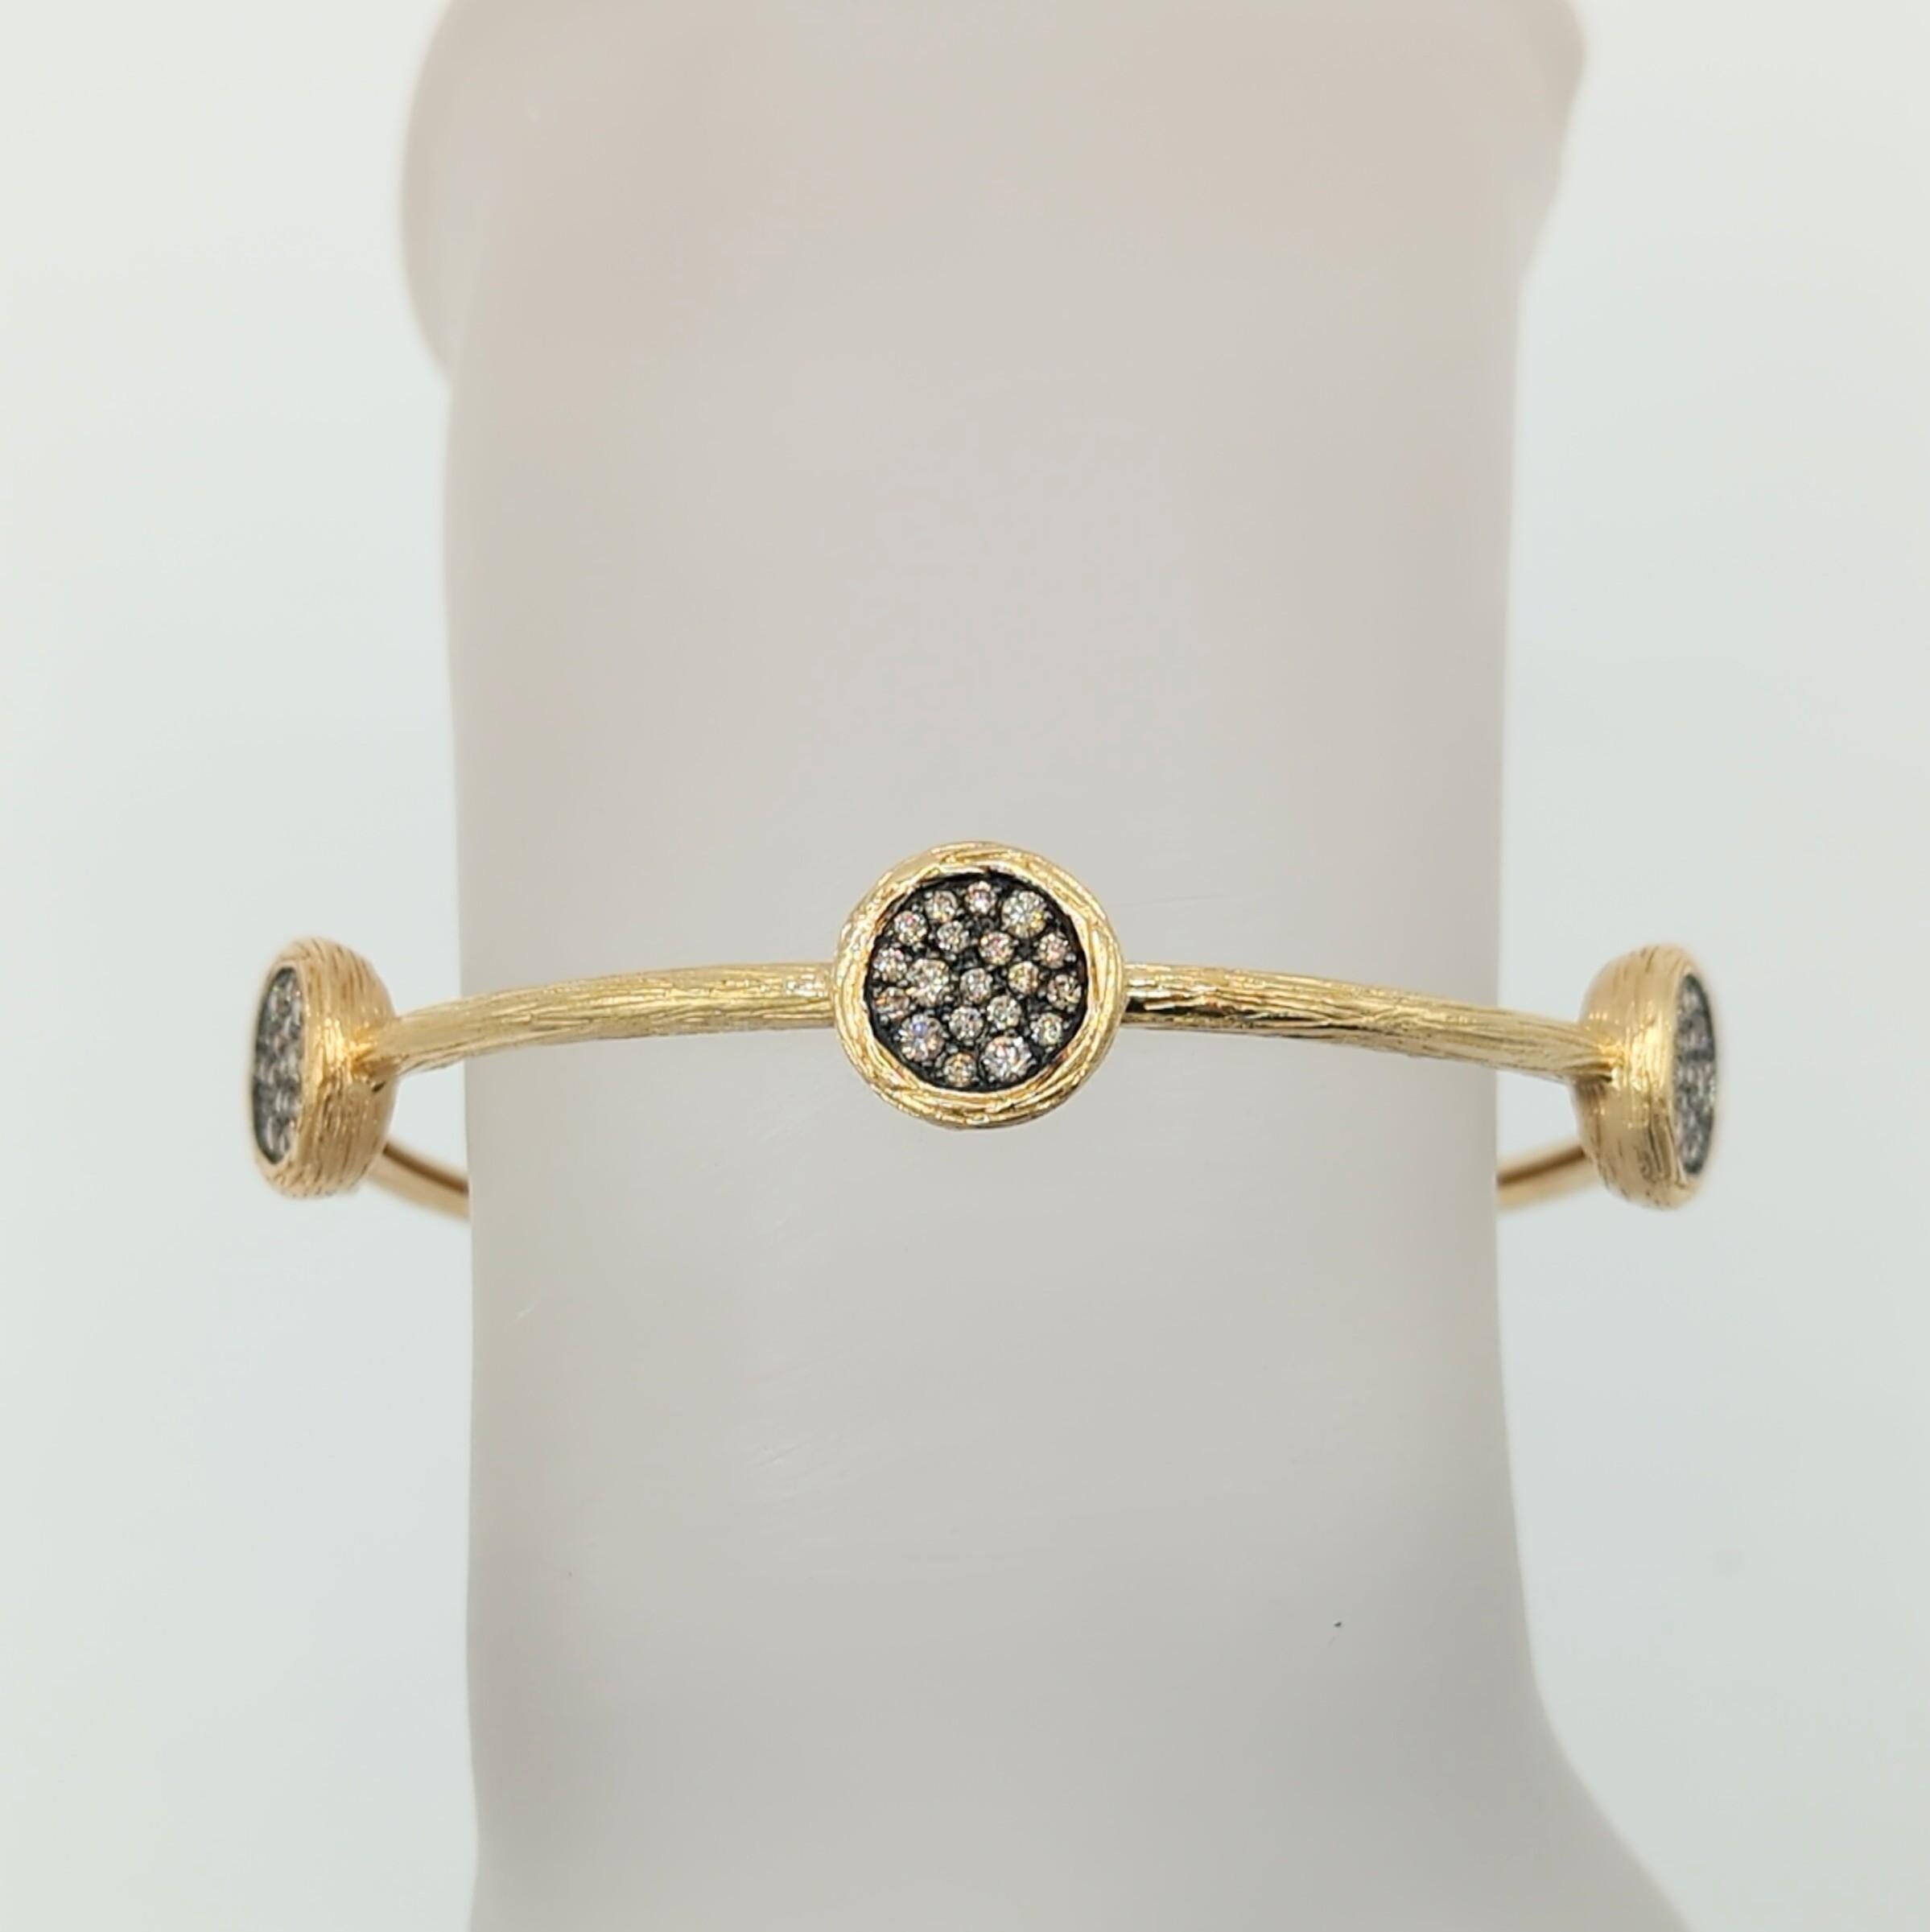 Magnifique diamant rond champagne de 0,90 ct. fait à la main en or jaune texturé 14k.  Ce bracelet est amusant et facile à porter avec n'importe quelle tenue.